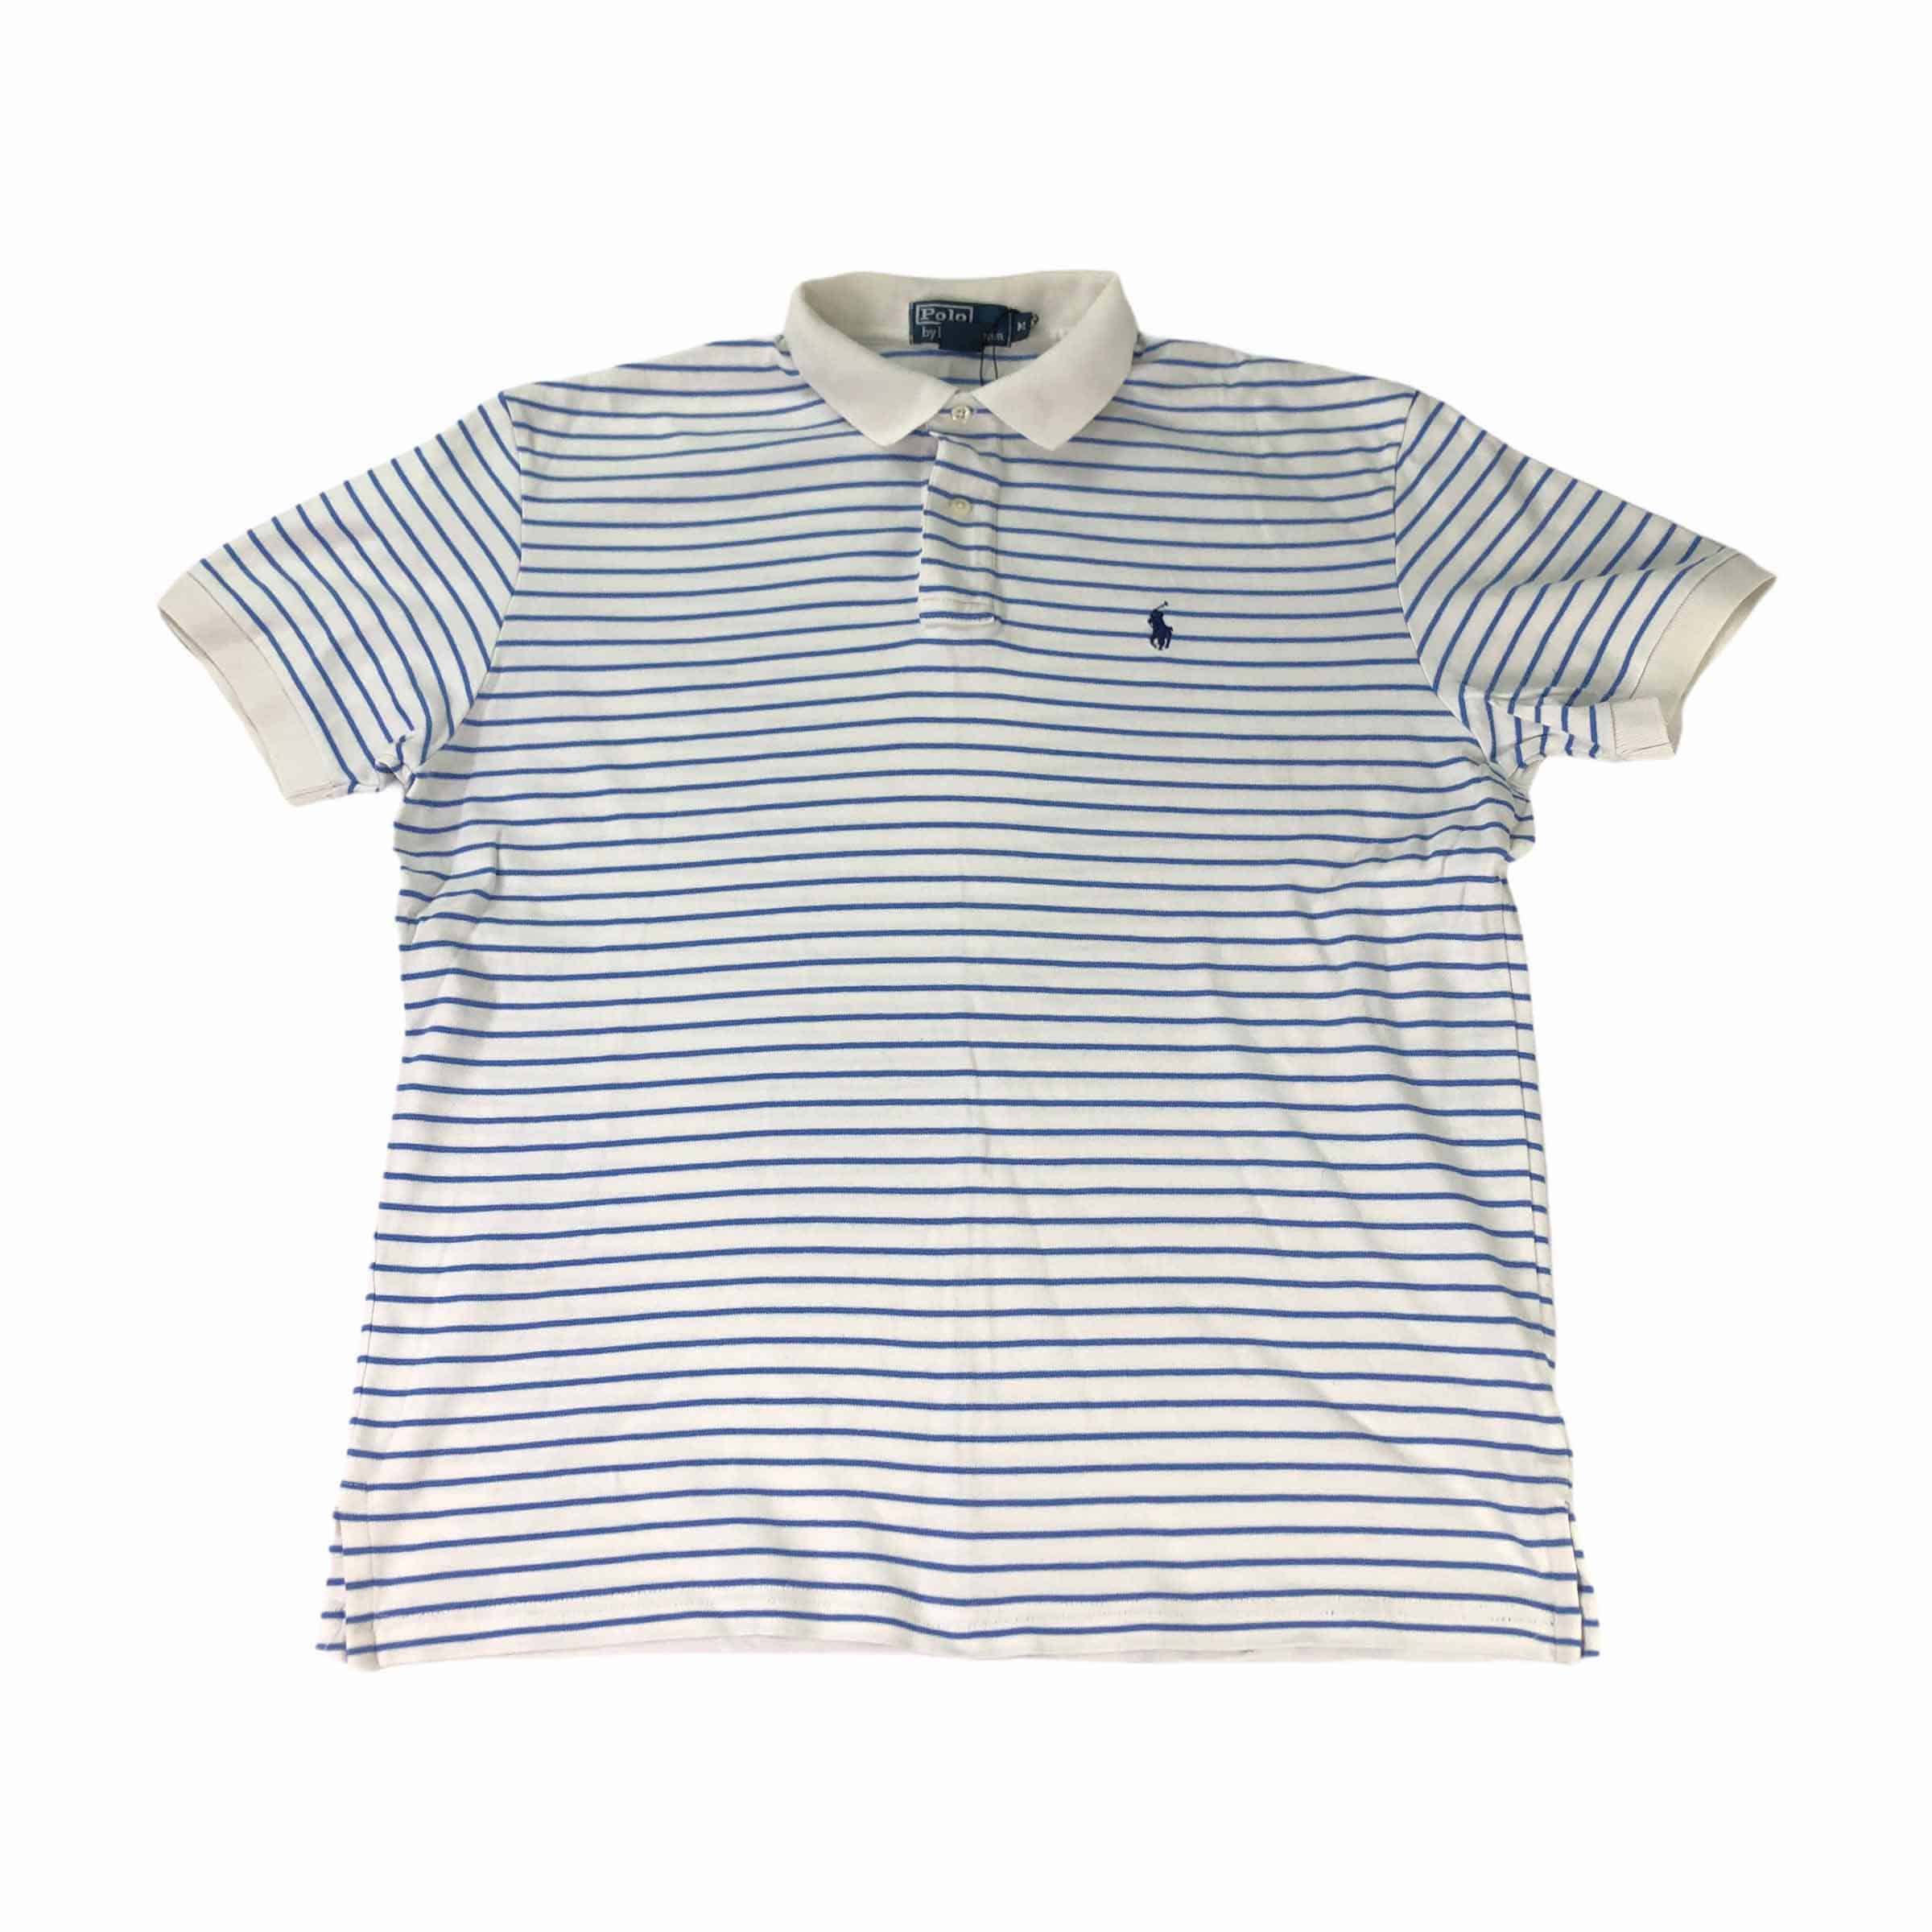 [Polo by Ralph Lauren] Stripe Polo Shirt - Size M